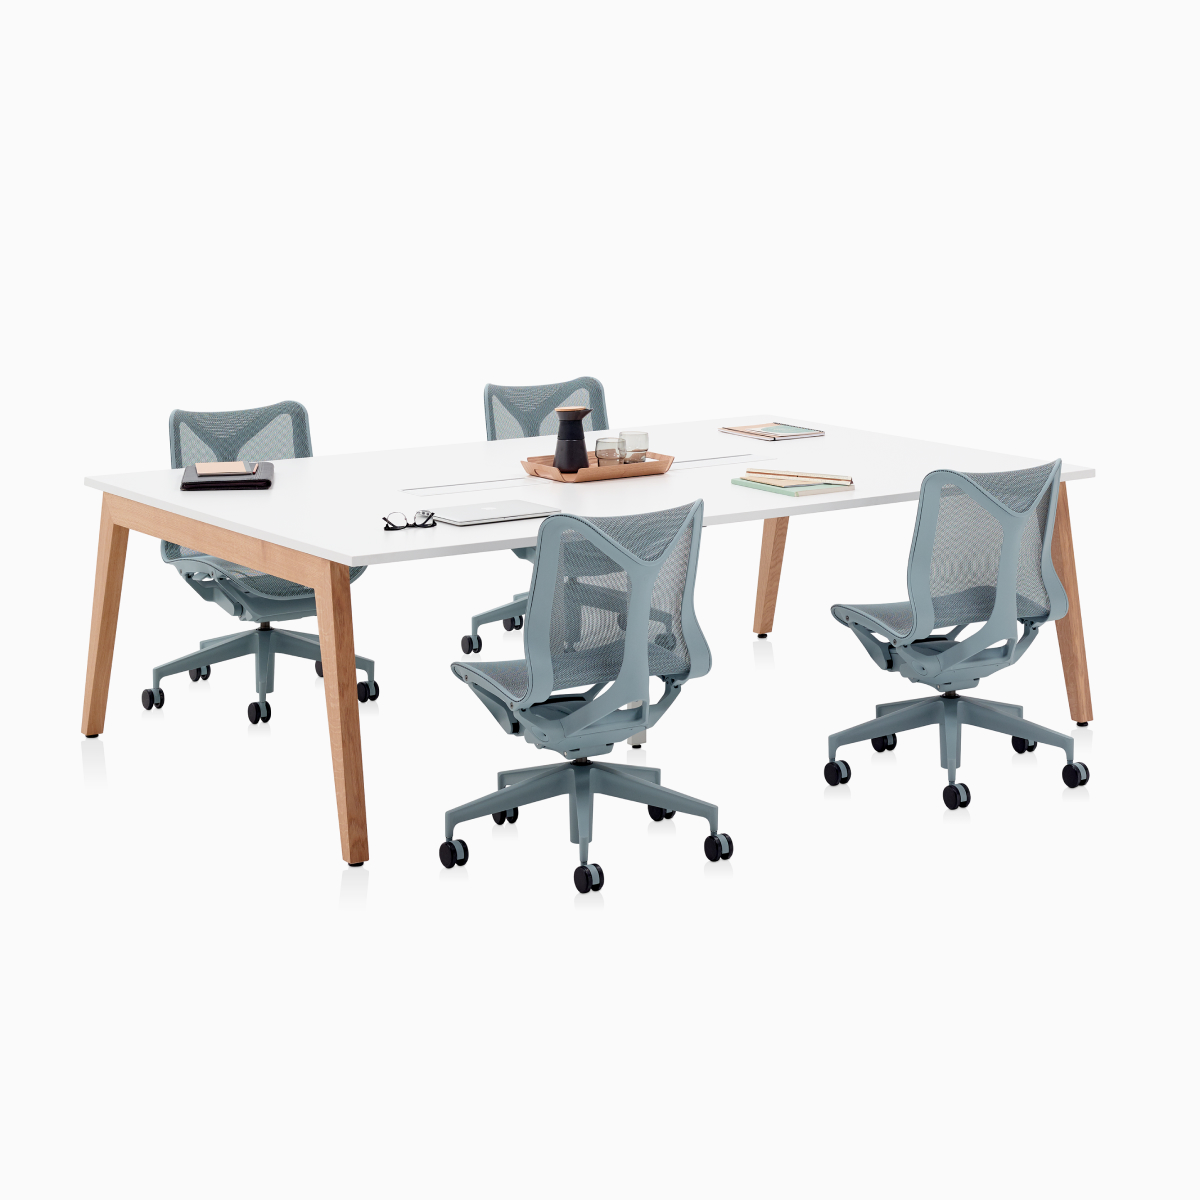 Layout Studio-vergadertafel met aansluitingen voor elektriciteit en Timber Legs met vier grijze low-back Cosm-stoelen.